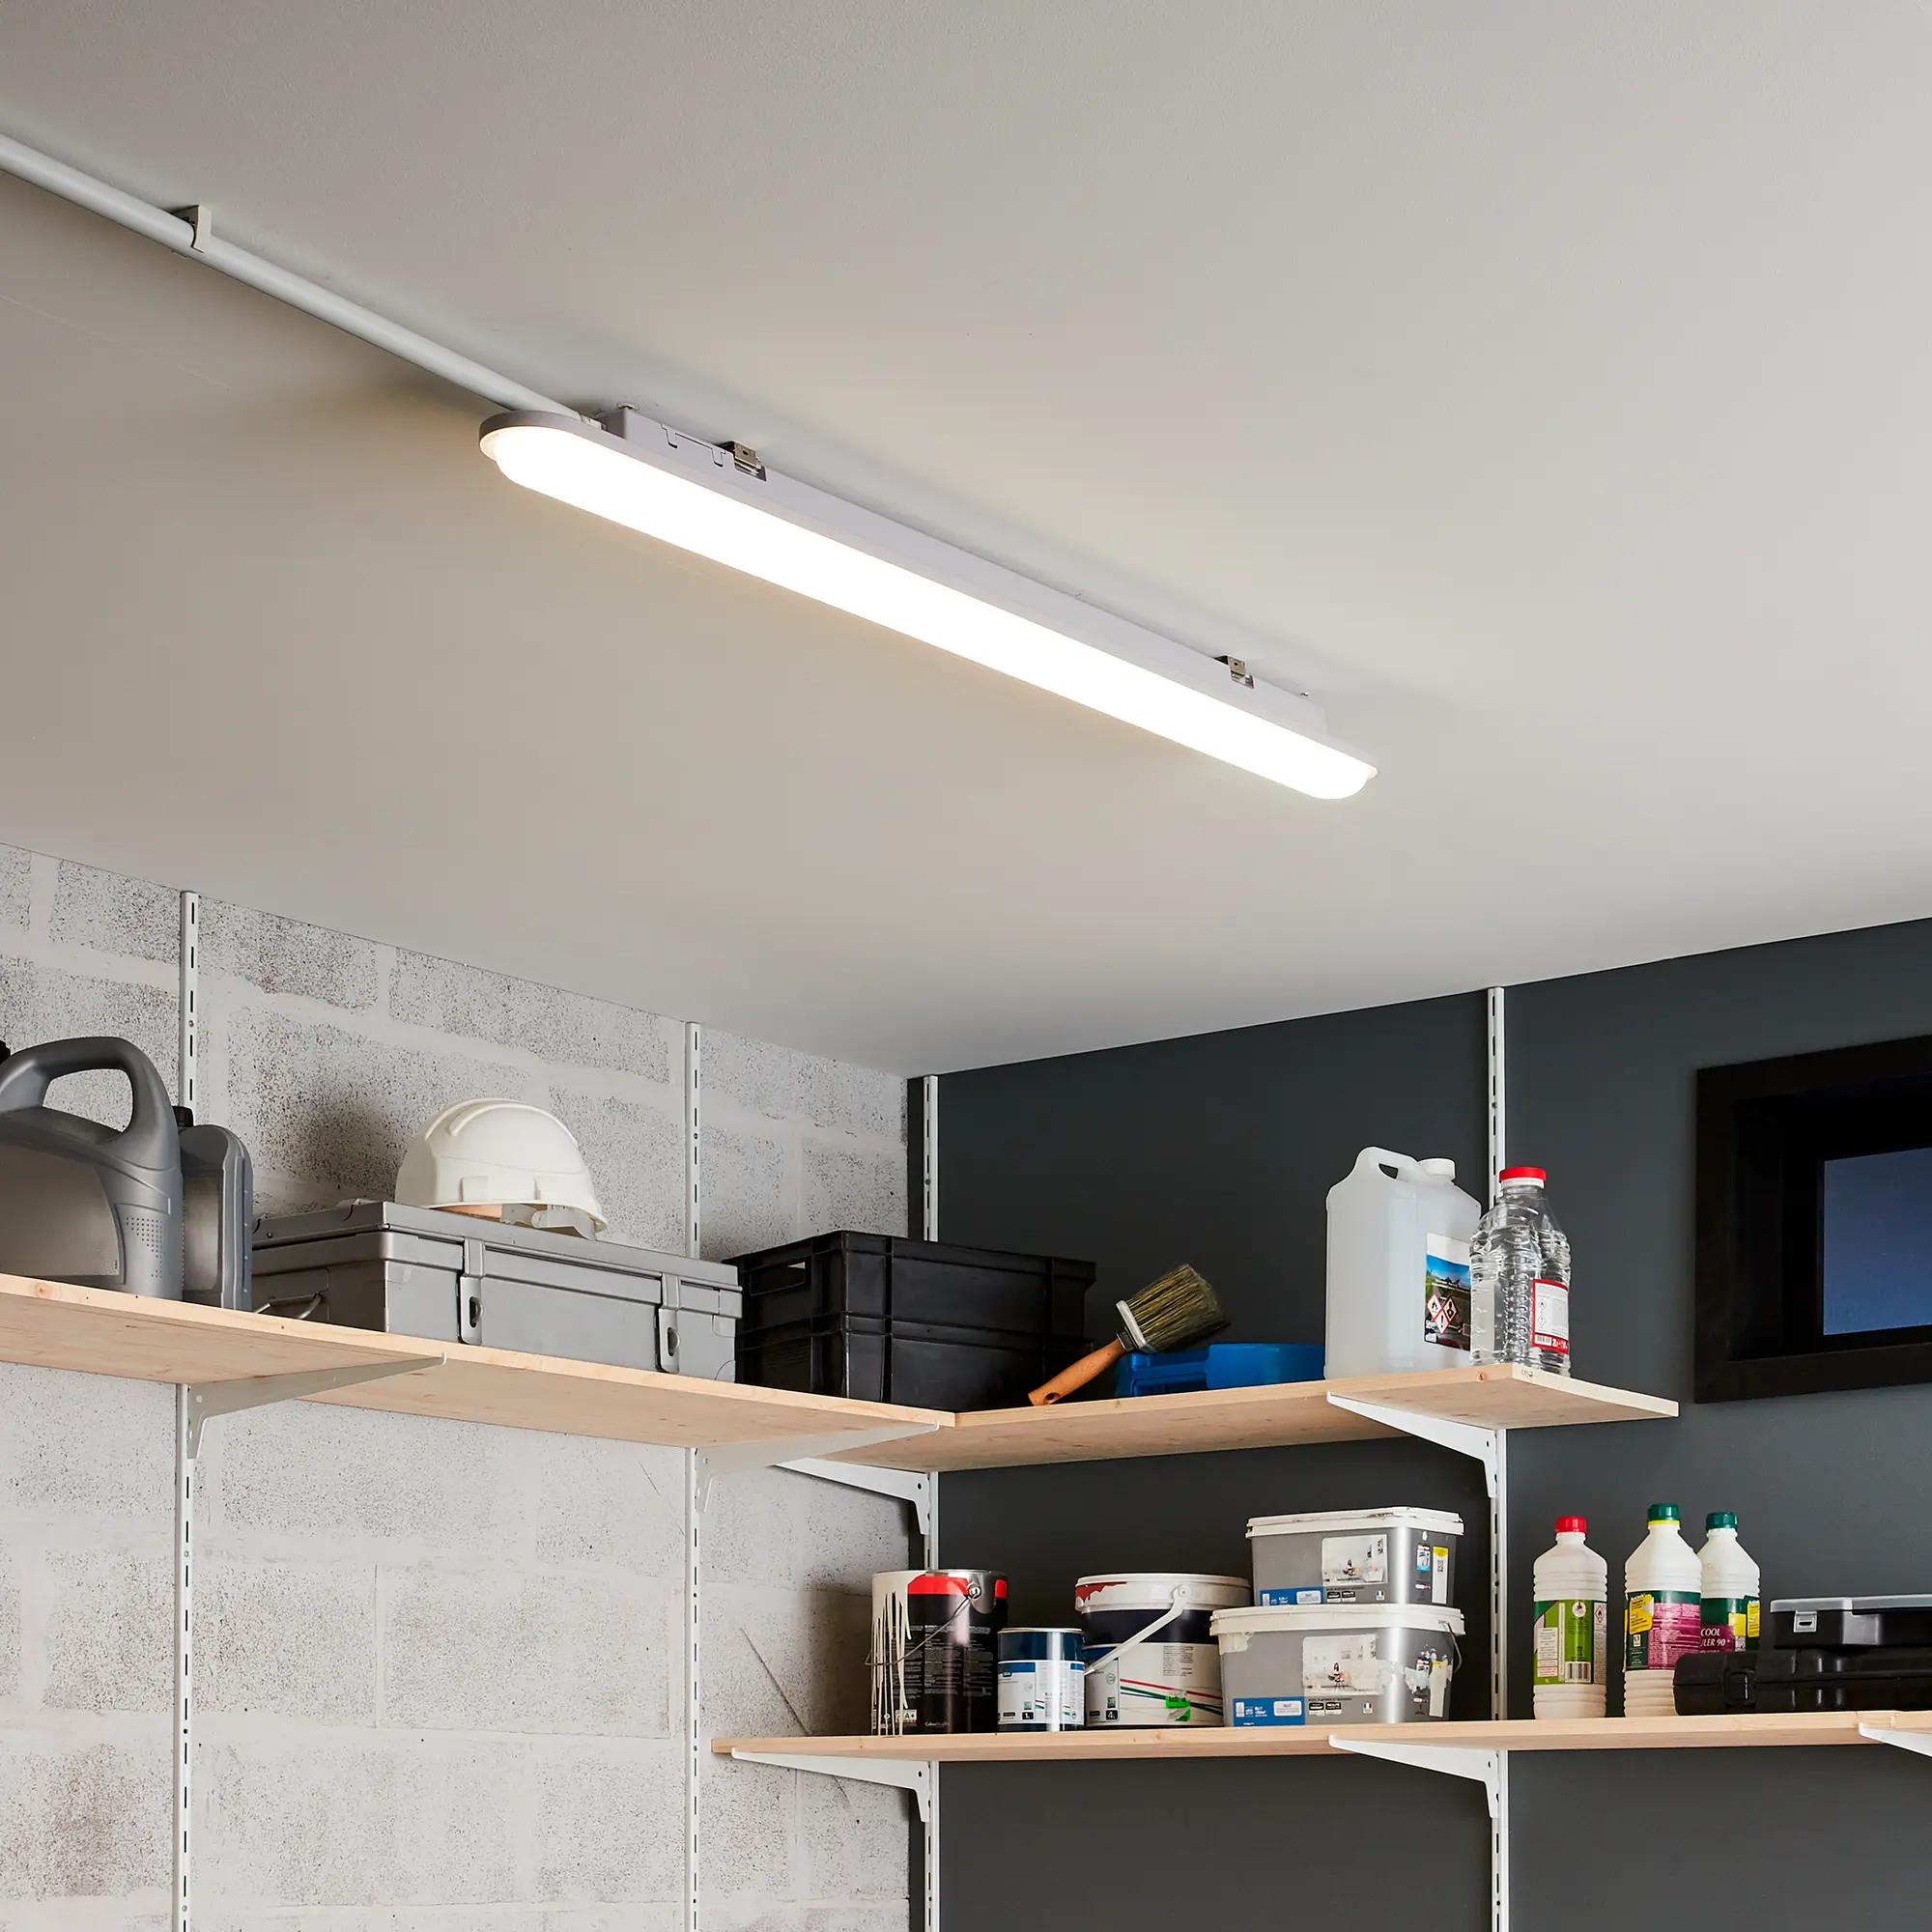 Luz de techo recargable con sensor de movimiento para interiores, luces de  ducha de 500 lm para ducha interior sin cableado, luz con sensor de